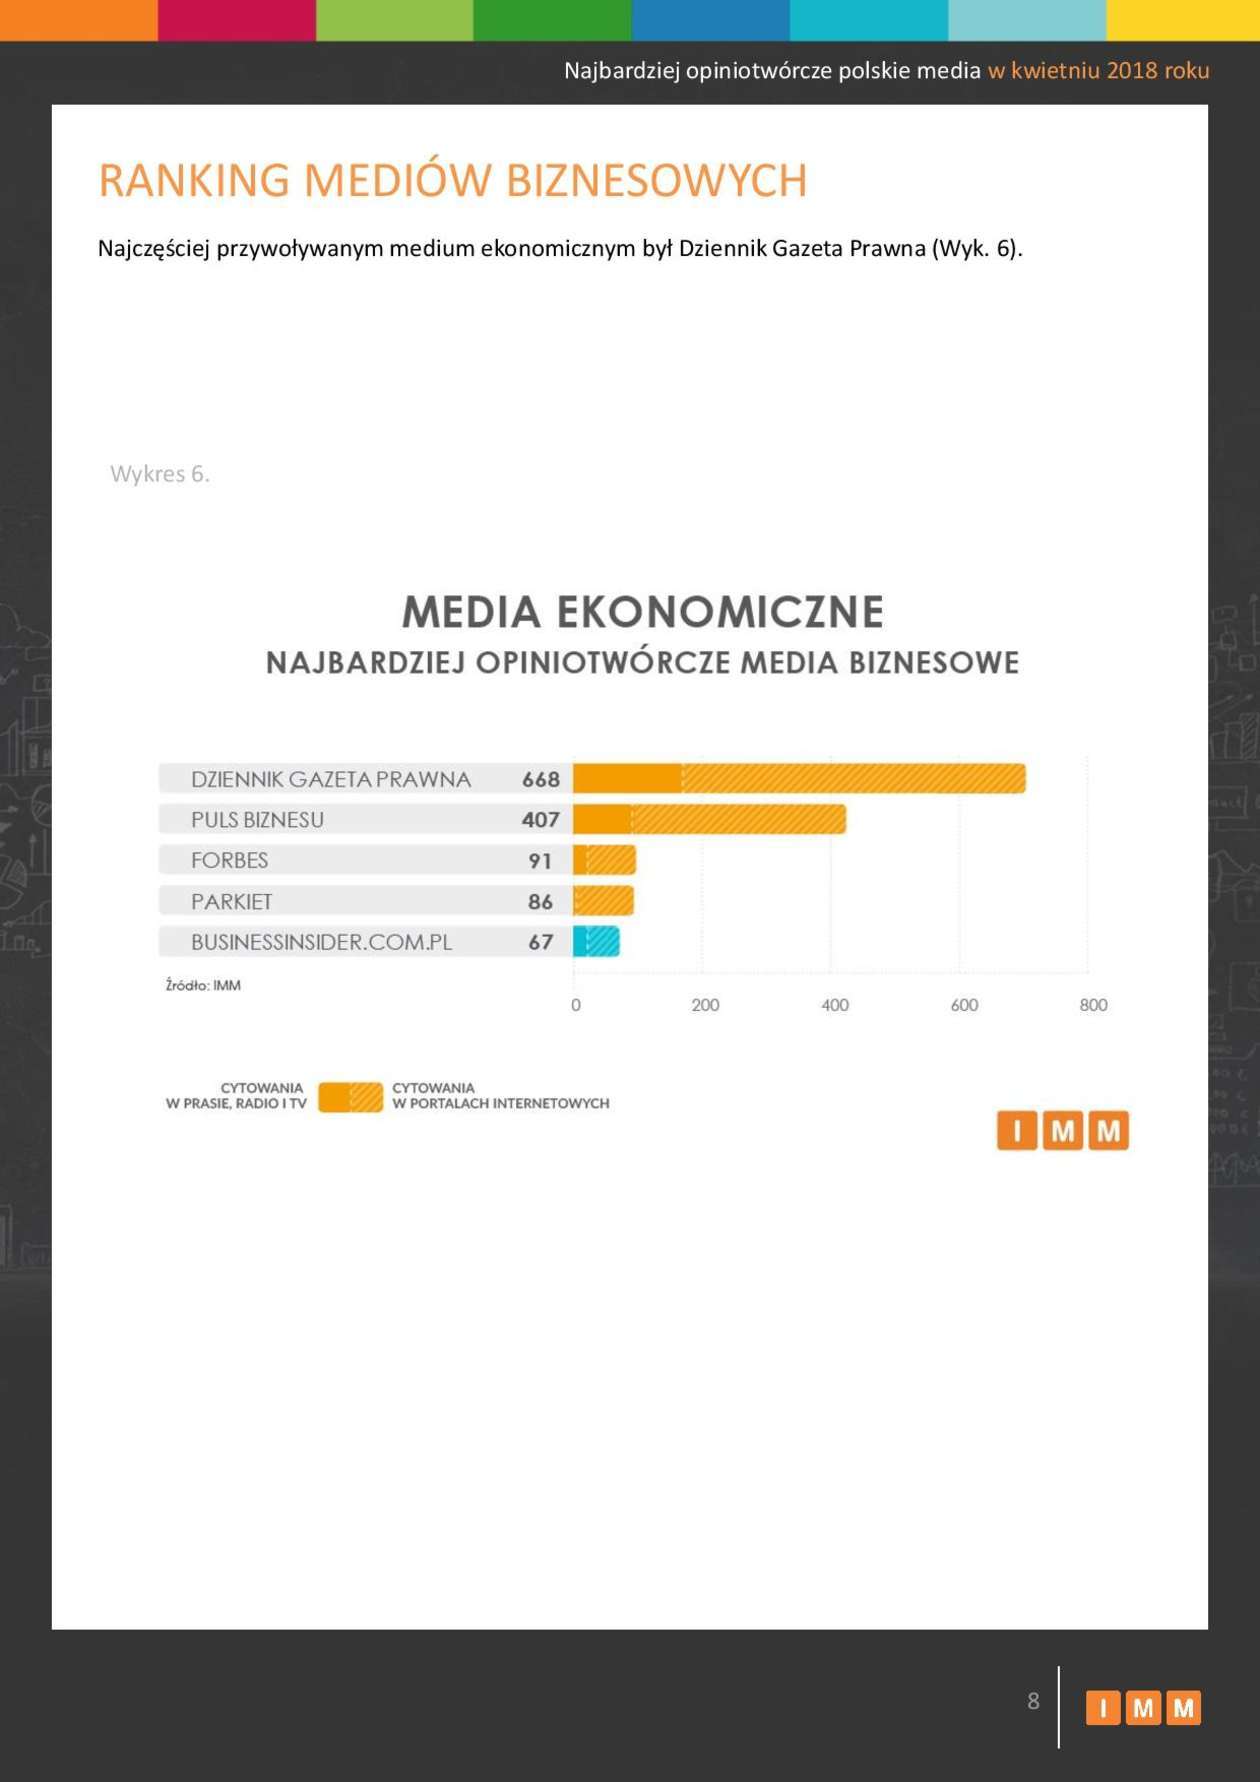  Najbardziej opiniotwórcze polskie media w kwietniu 2018 roku (zdjęcie 8) - Autor: Instytut Monitorowania Mediów